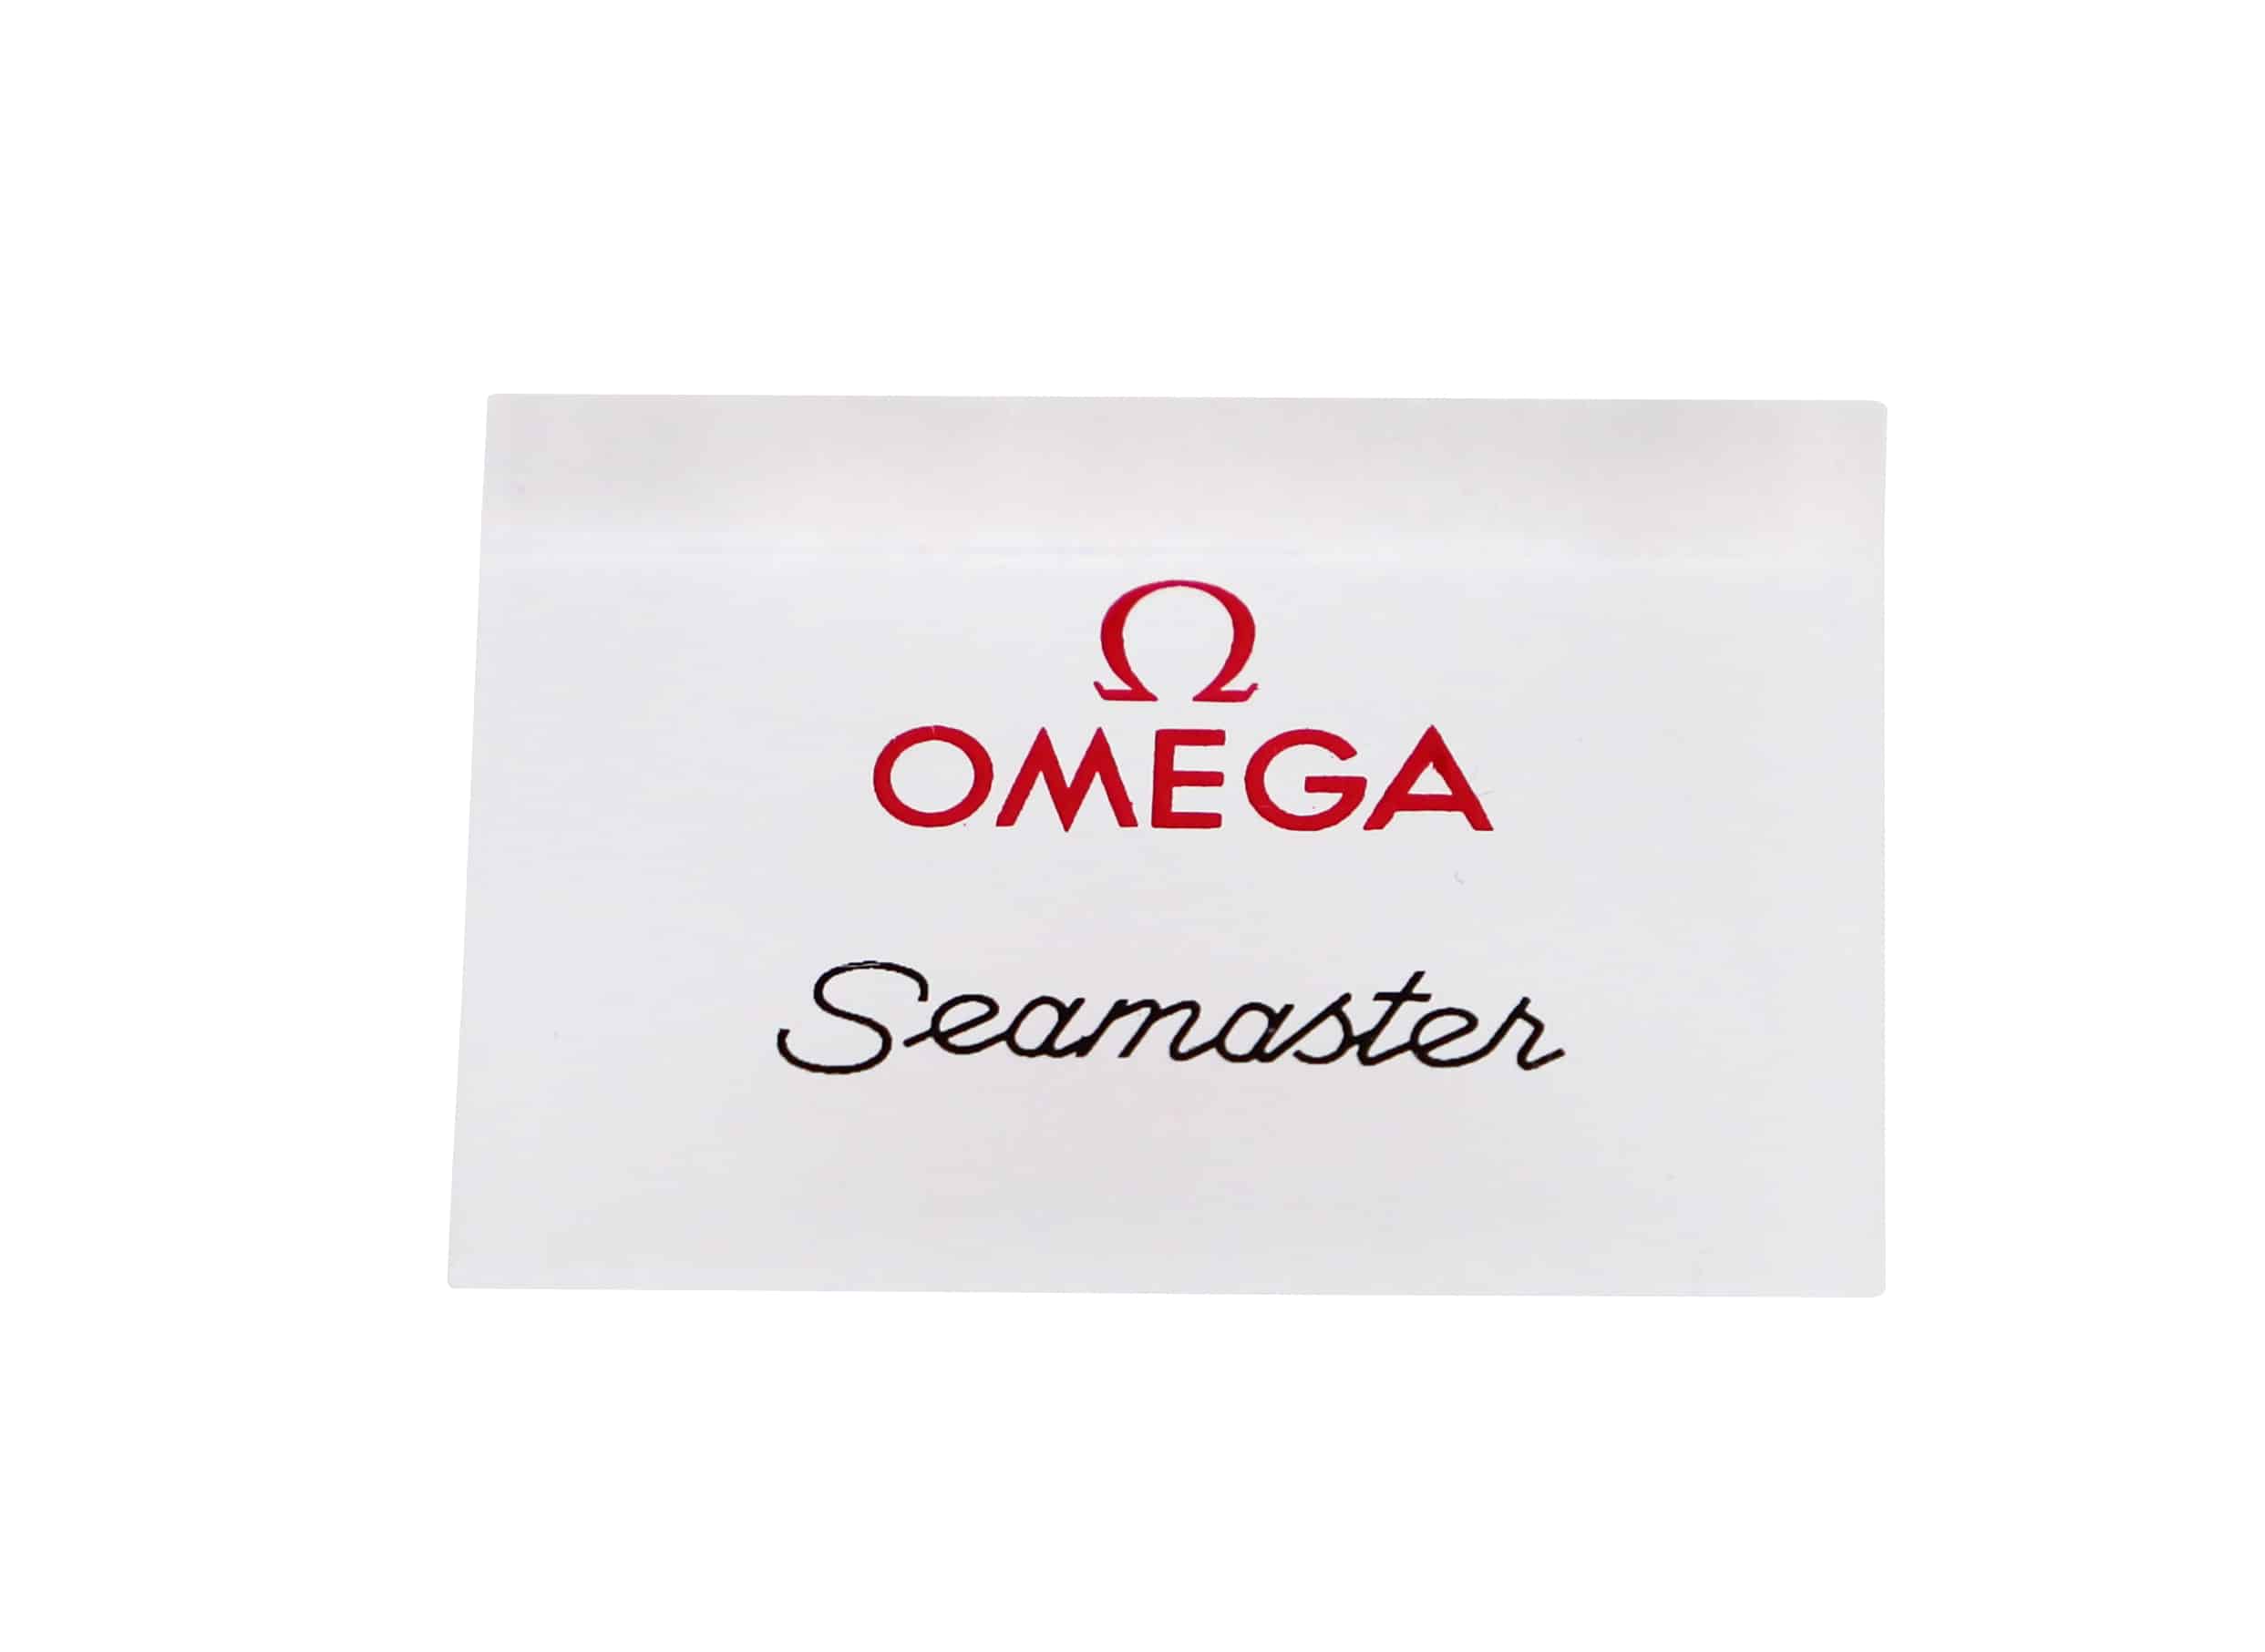 Omega Seamaster Display Sign - Rare Watch Parts